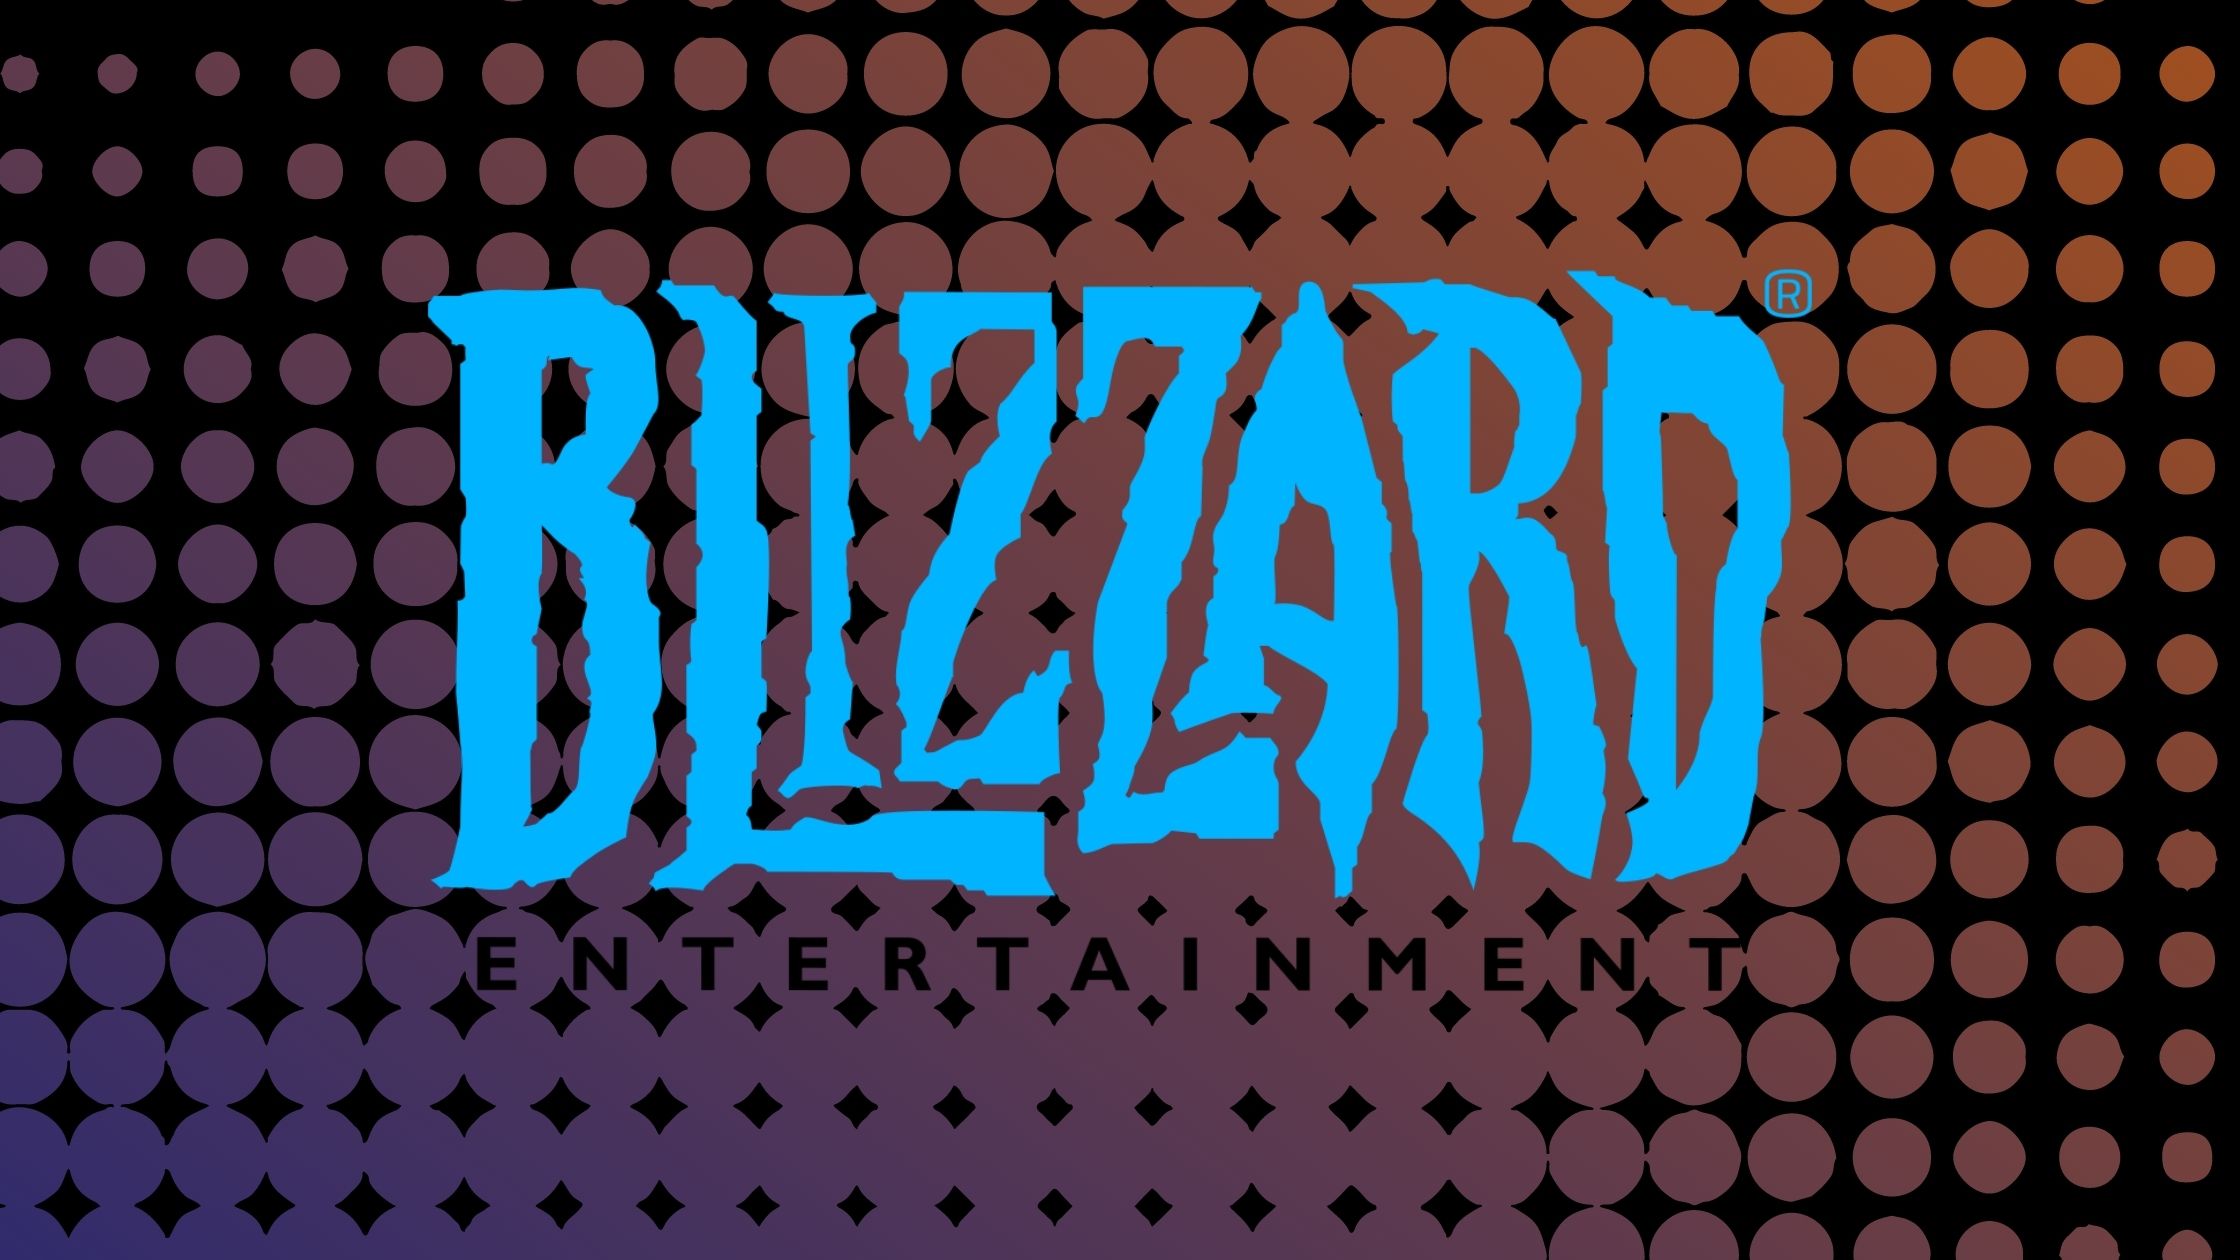 شركة Blizzard تُخطط لإصدار Warcraft Mobile في وقت لاحق